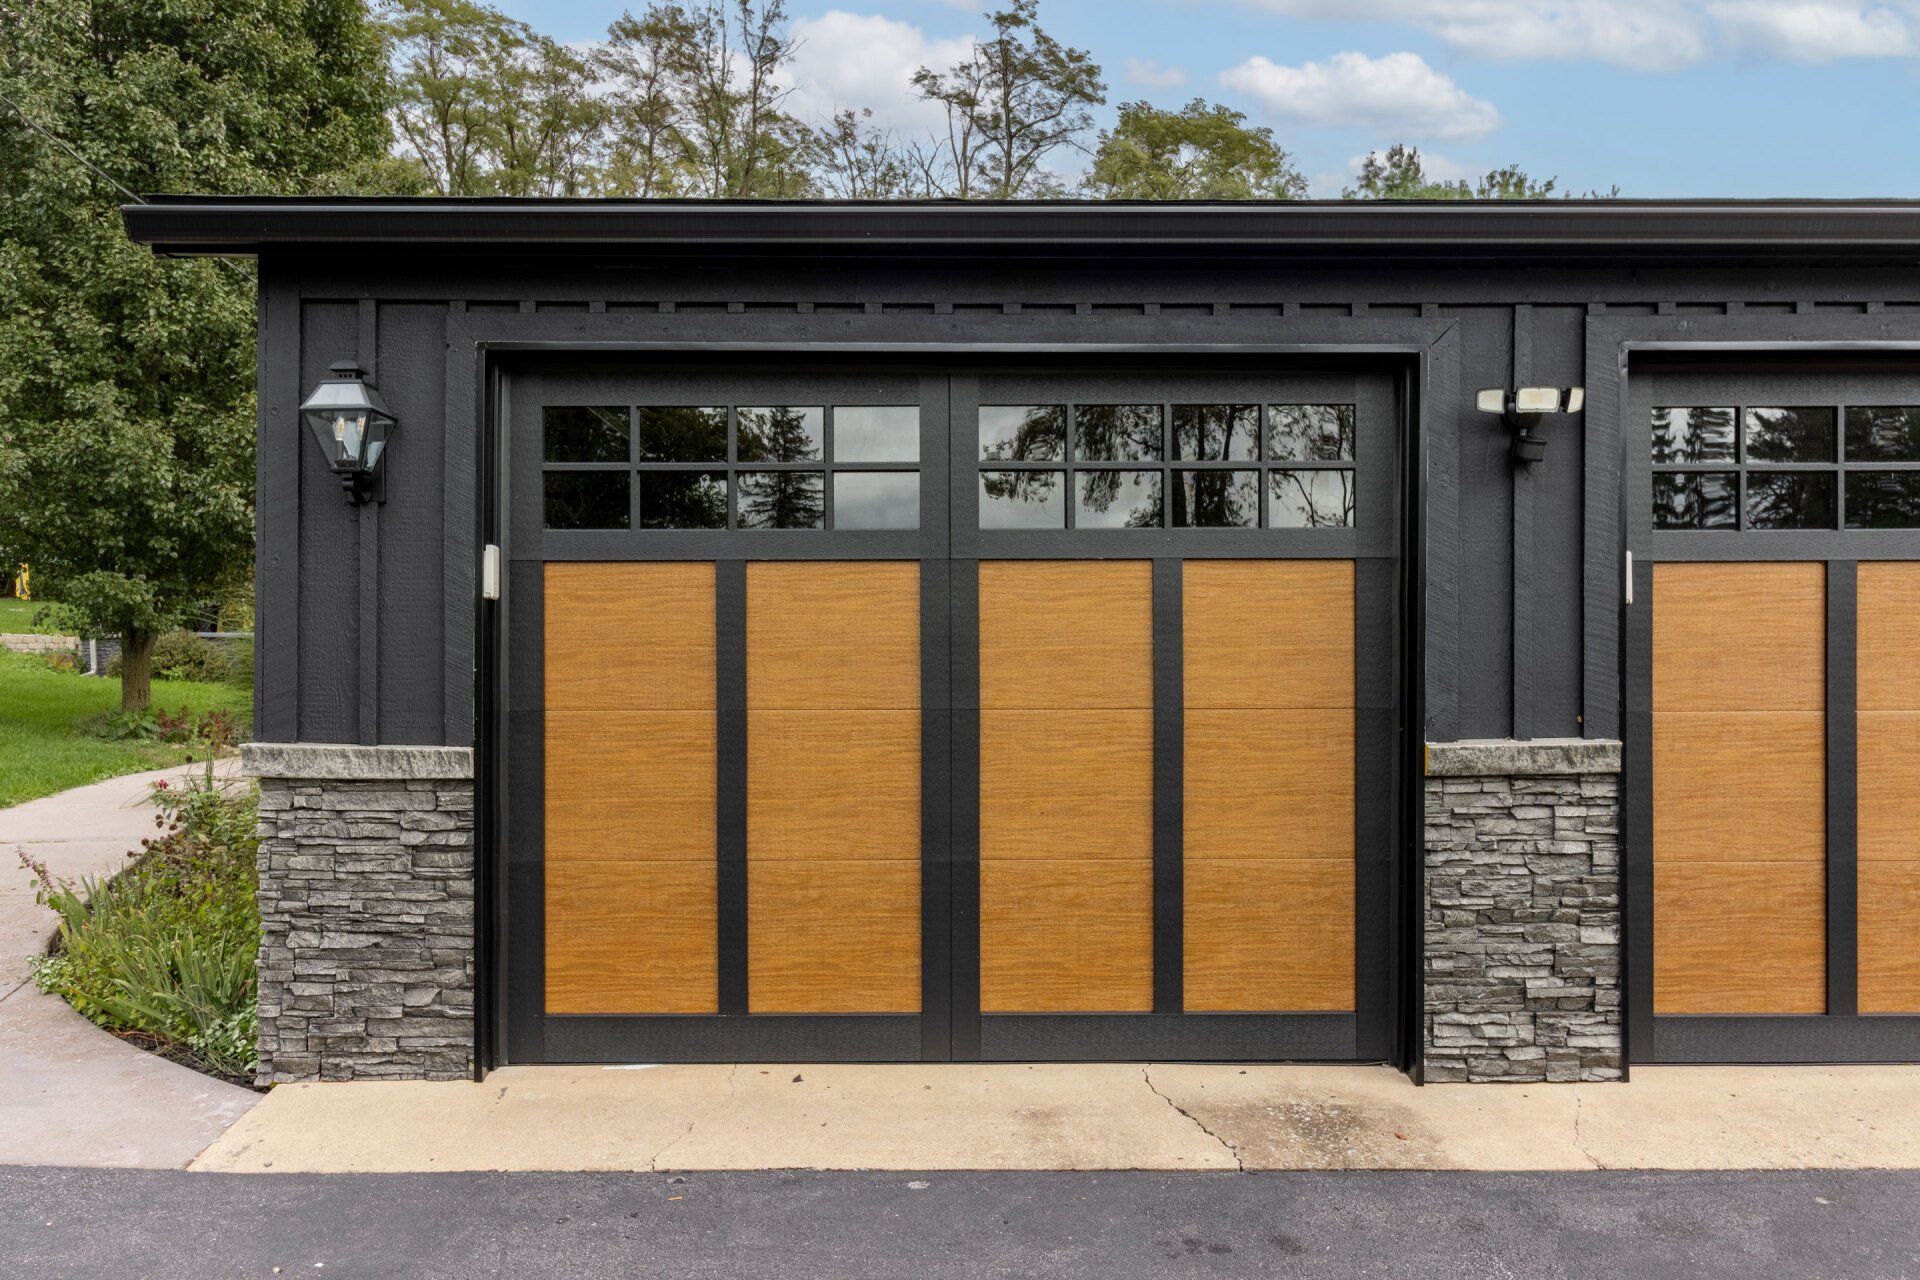 Affordable custom garage doors and garage door installation Lock haven and Williamsport